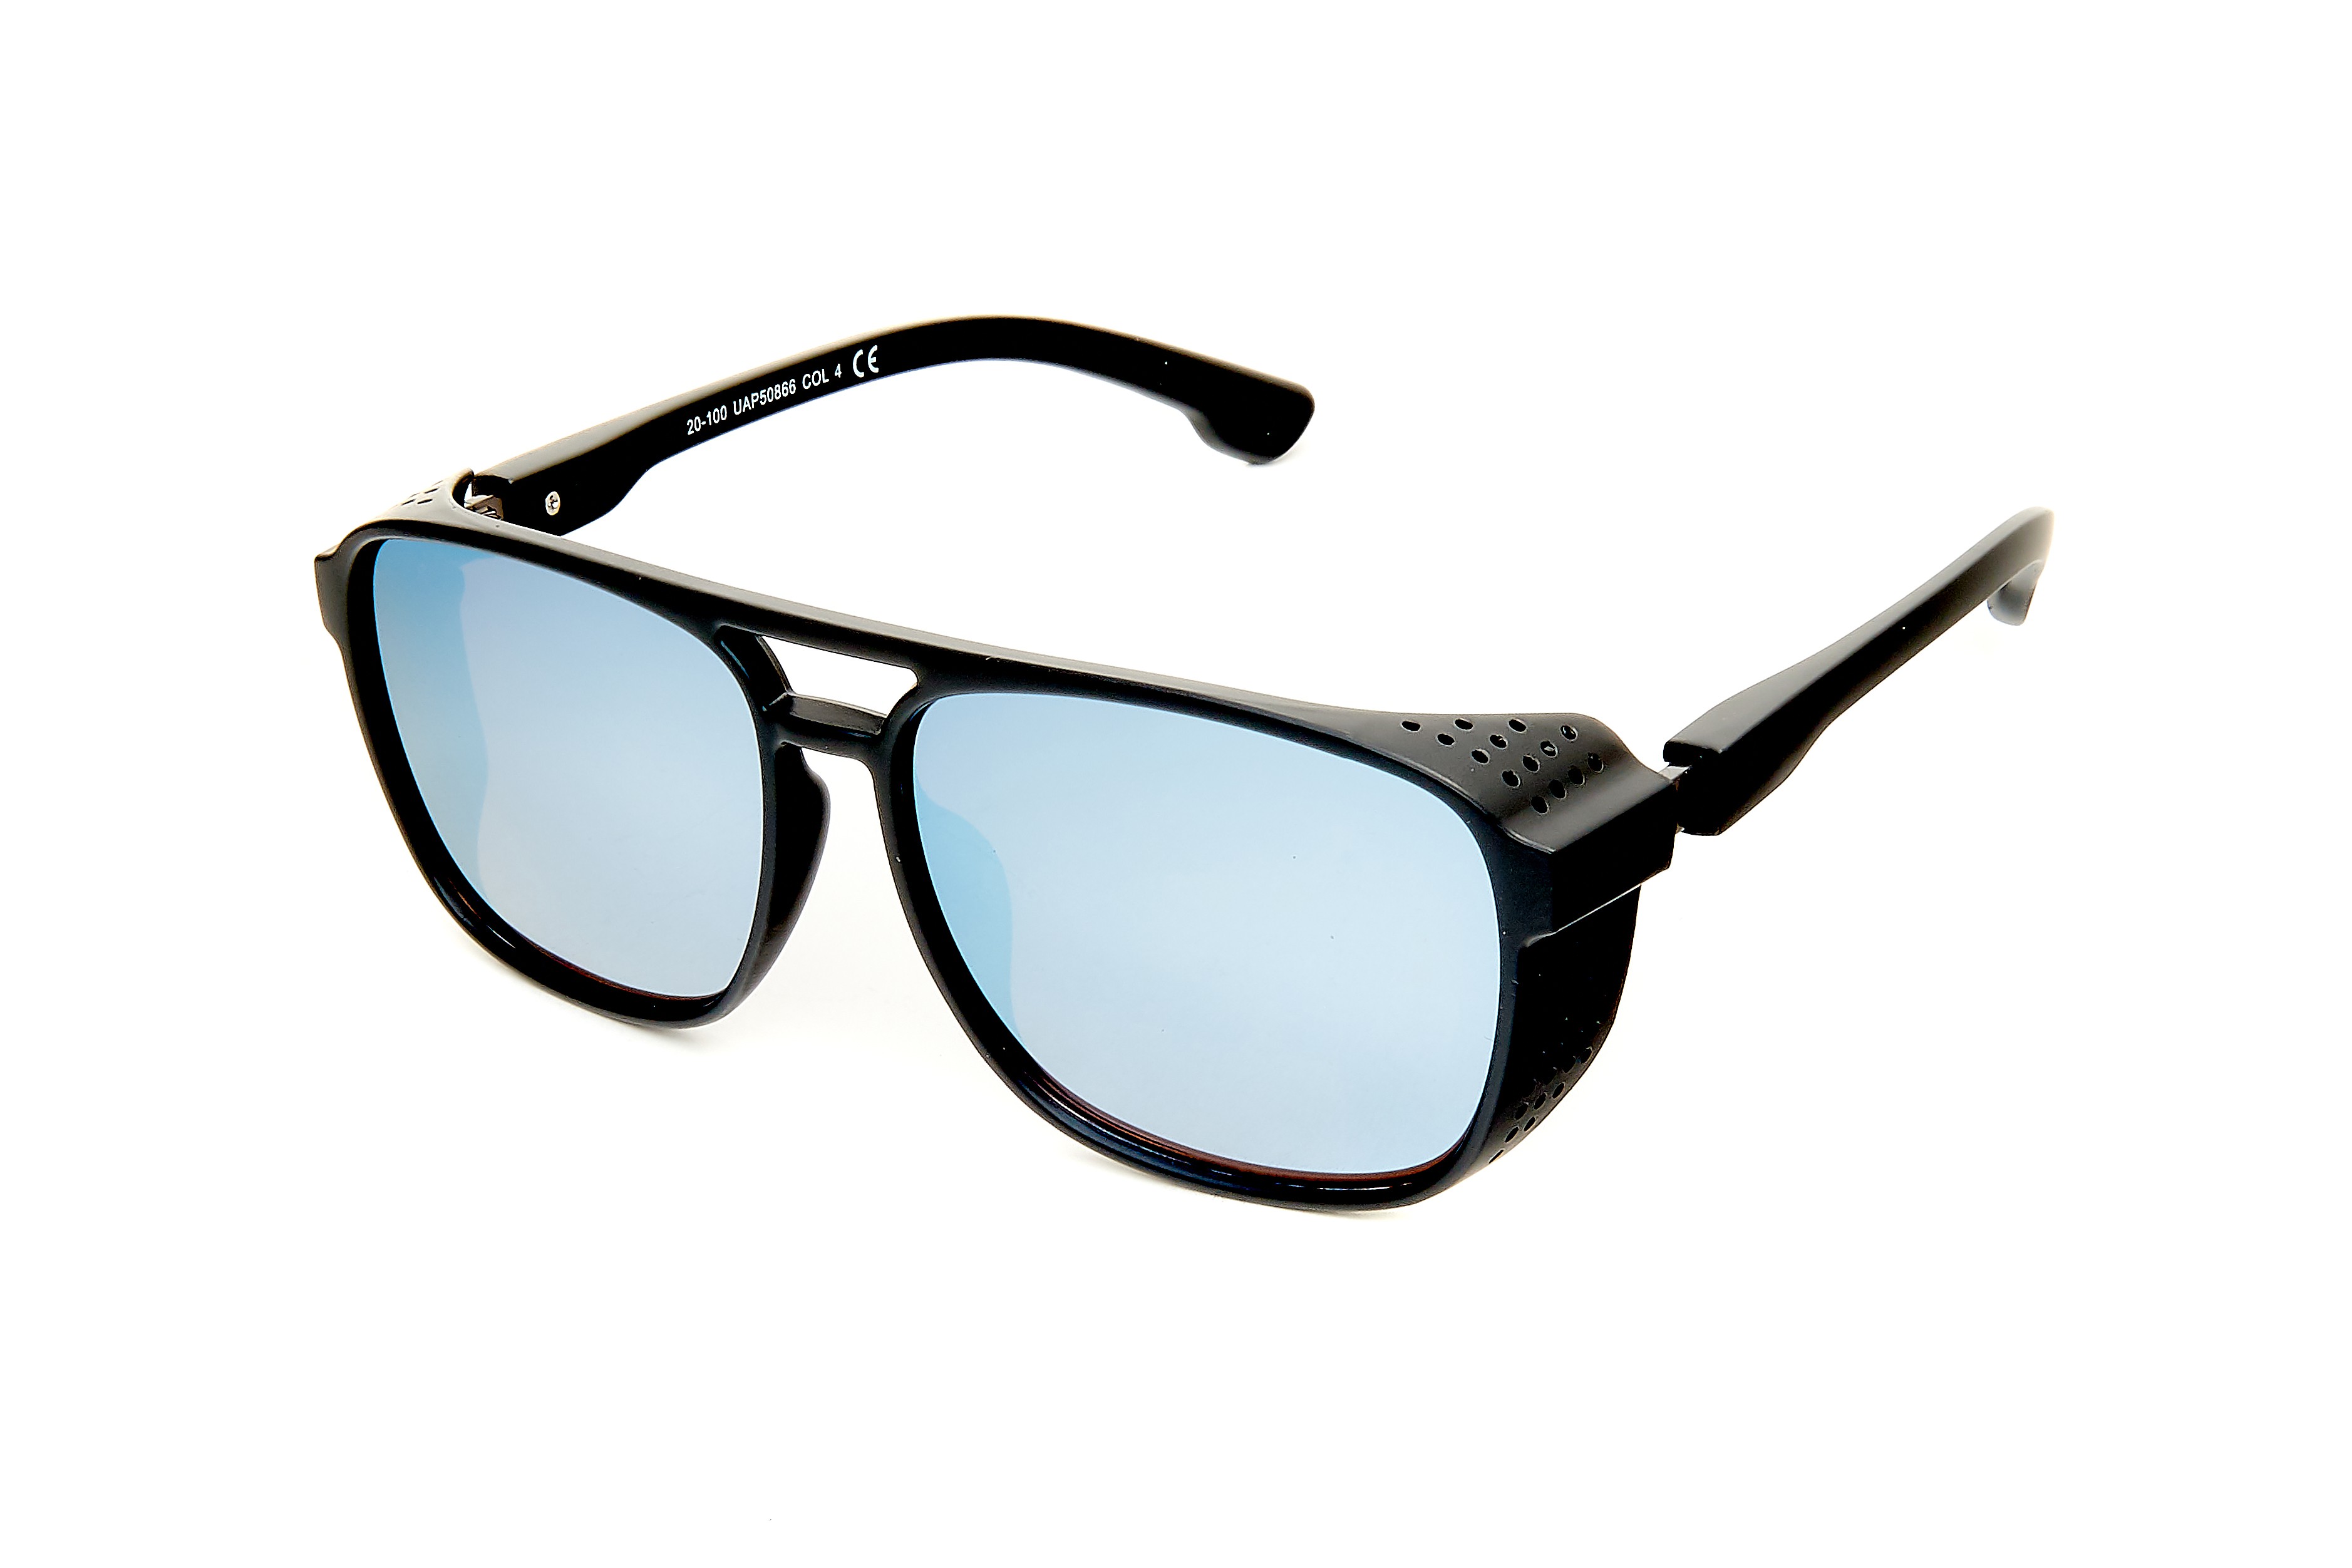 https://shadesworld.online/90/men-sunglasses-stockholm.jpg